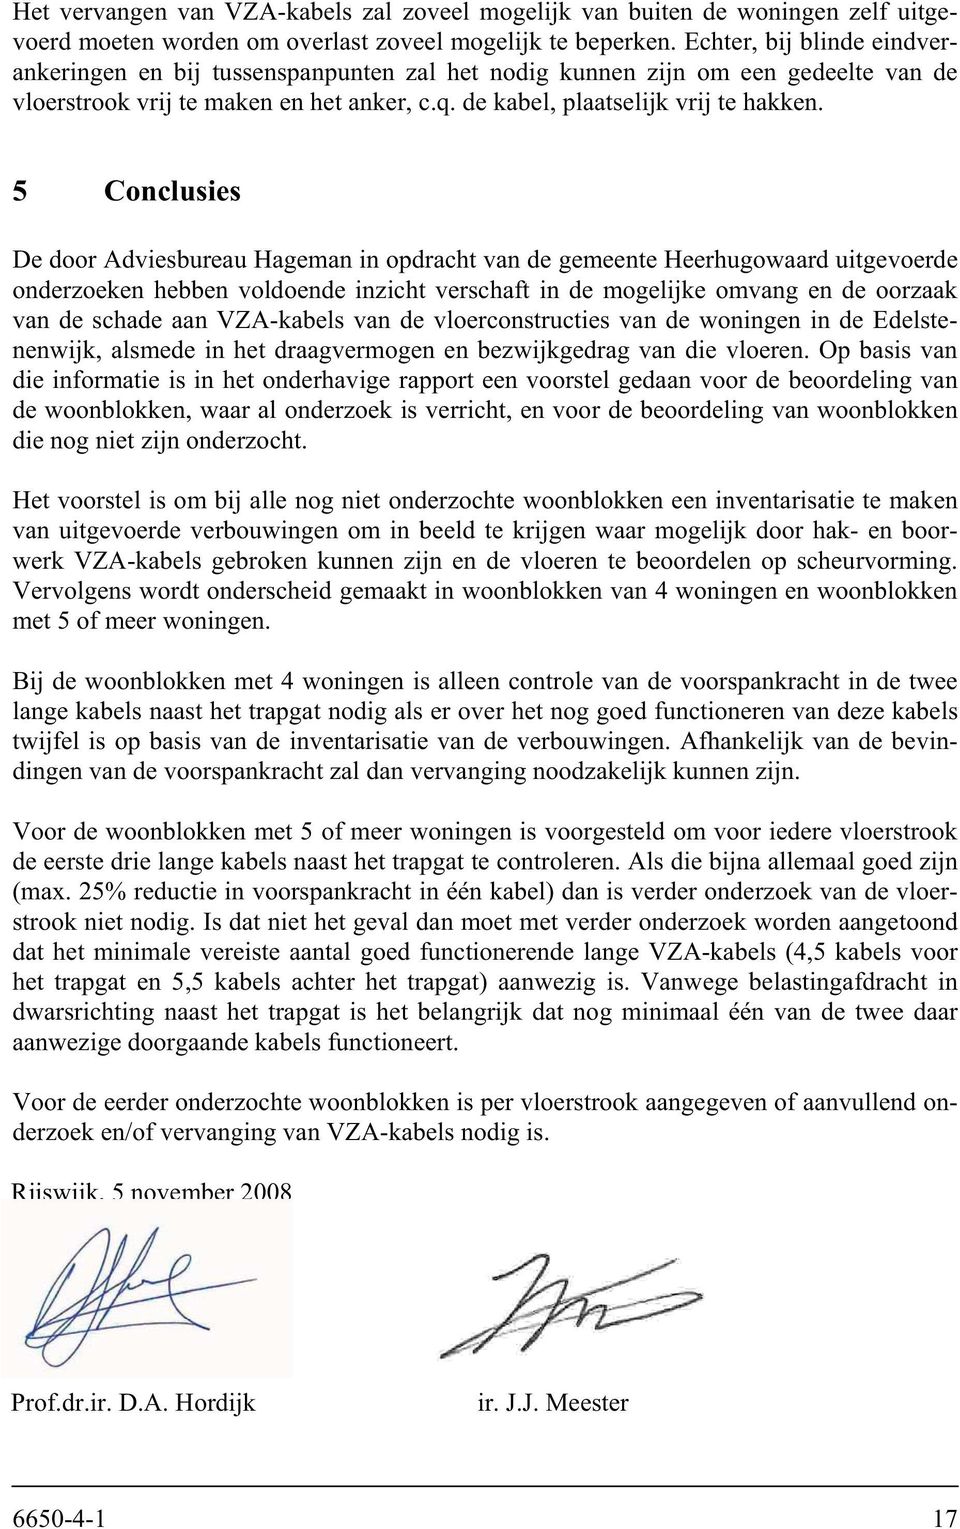 5 Conclusies De door Adviesbureau Hageman in opdracht van de gemeente Heerhugowaard uitgevoerde onderzoeken hebben voldoende inzicht verschaft in de mogelijke omvang en de oorzaak van de schade aan